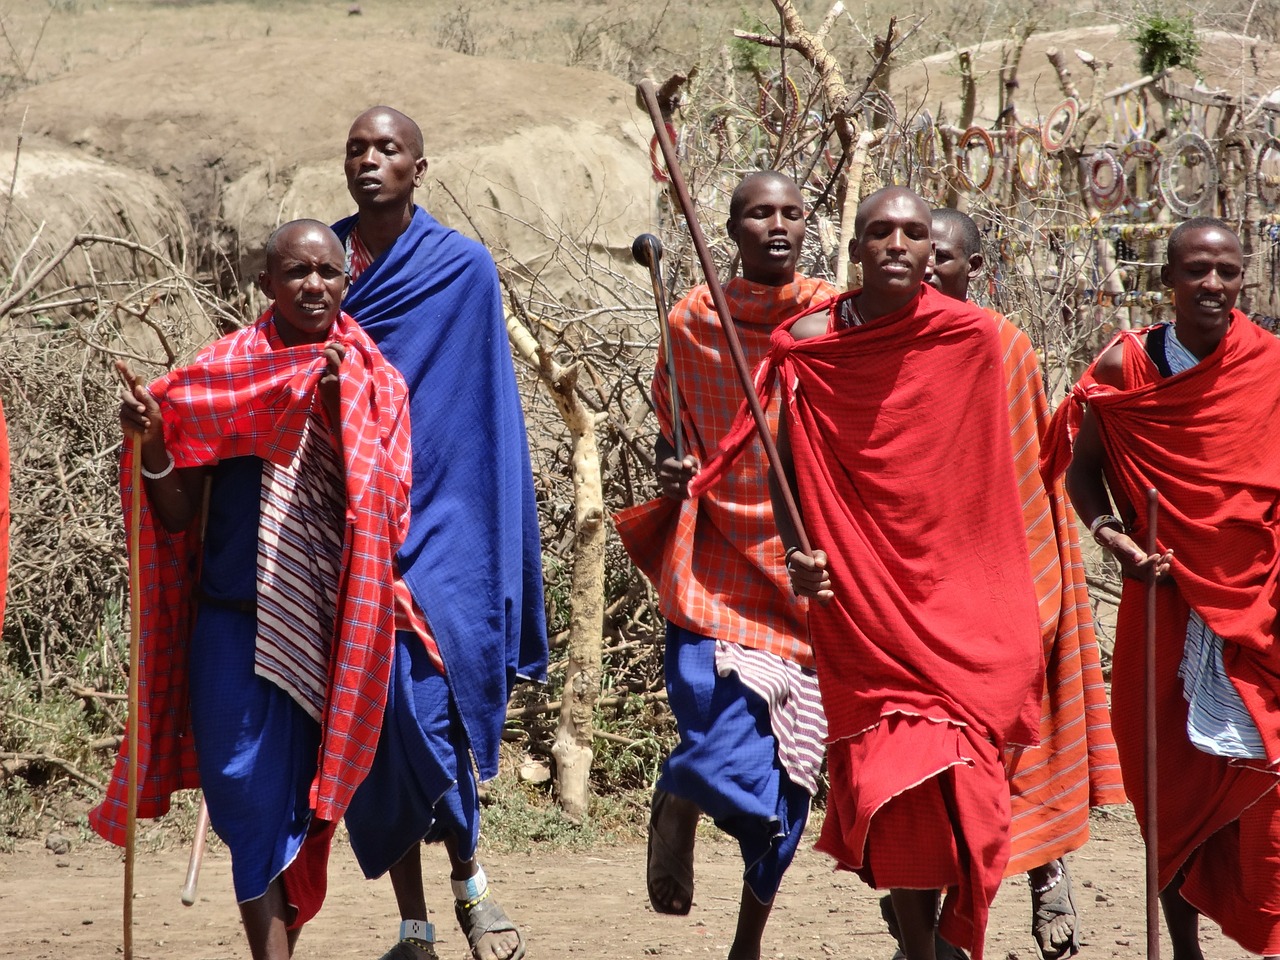 dances masai songs free photo